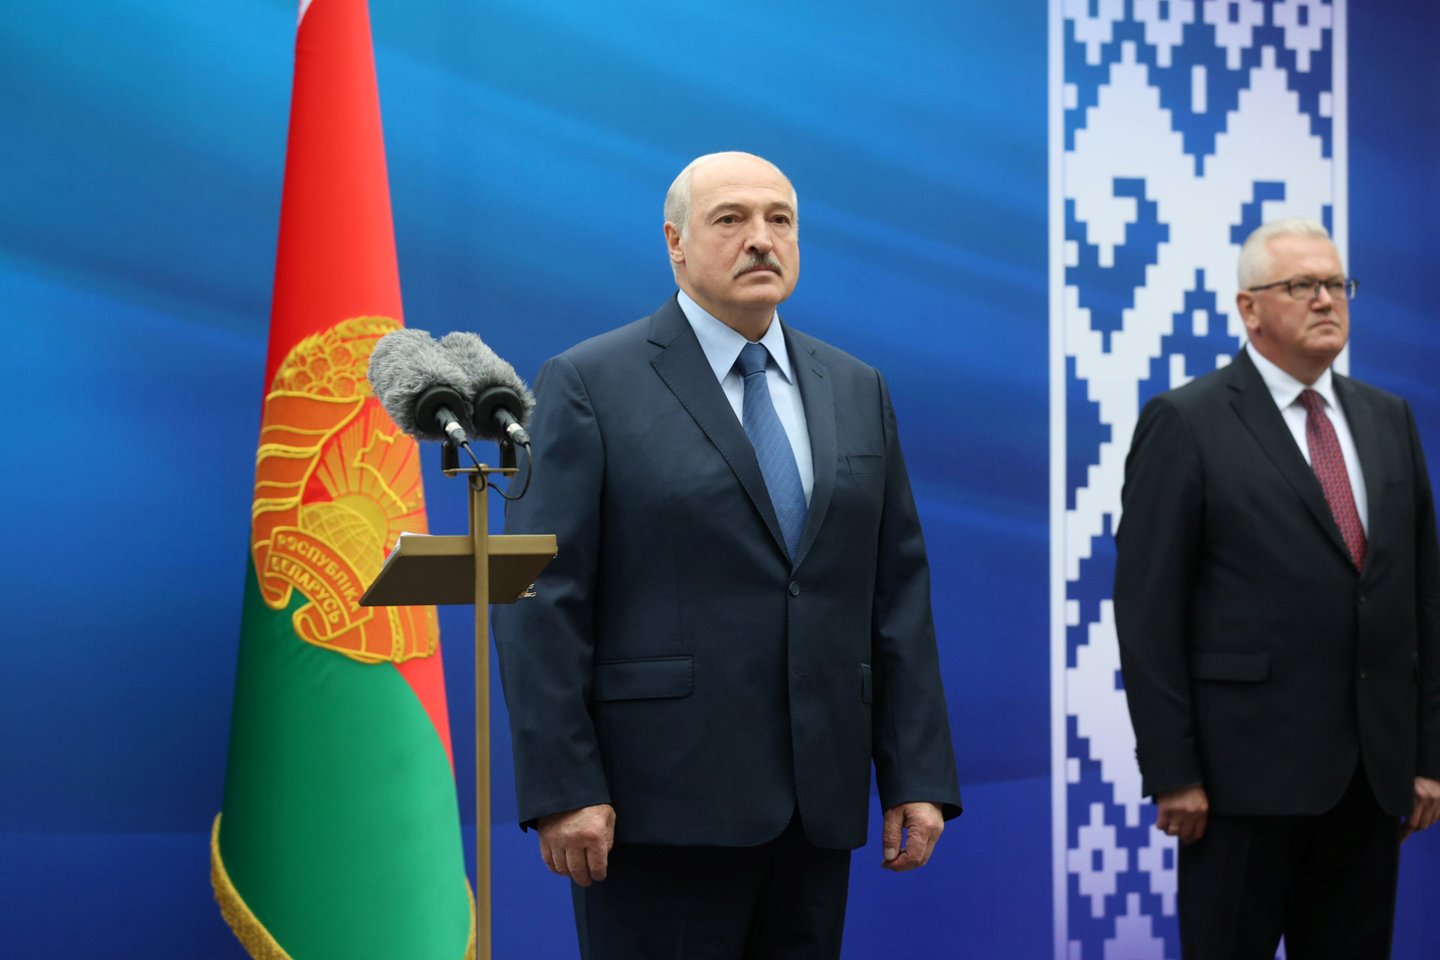  Baltarusijos prezidentas Aliaksandras Lukašenka antradienį pažadėjo neuždaryti šalyje veikiančių katalikų bažnyčių, nors jie, pasak šalies vadovo „užsiima antilukašenkine propaganda“.  <br>Reuters/Scanpix nuotr.